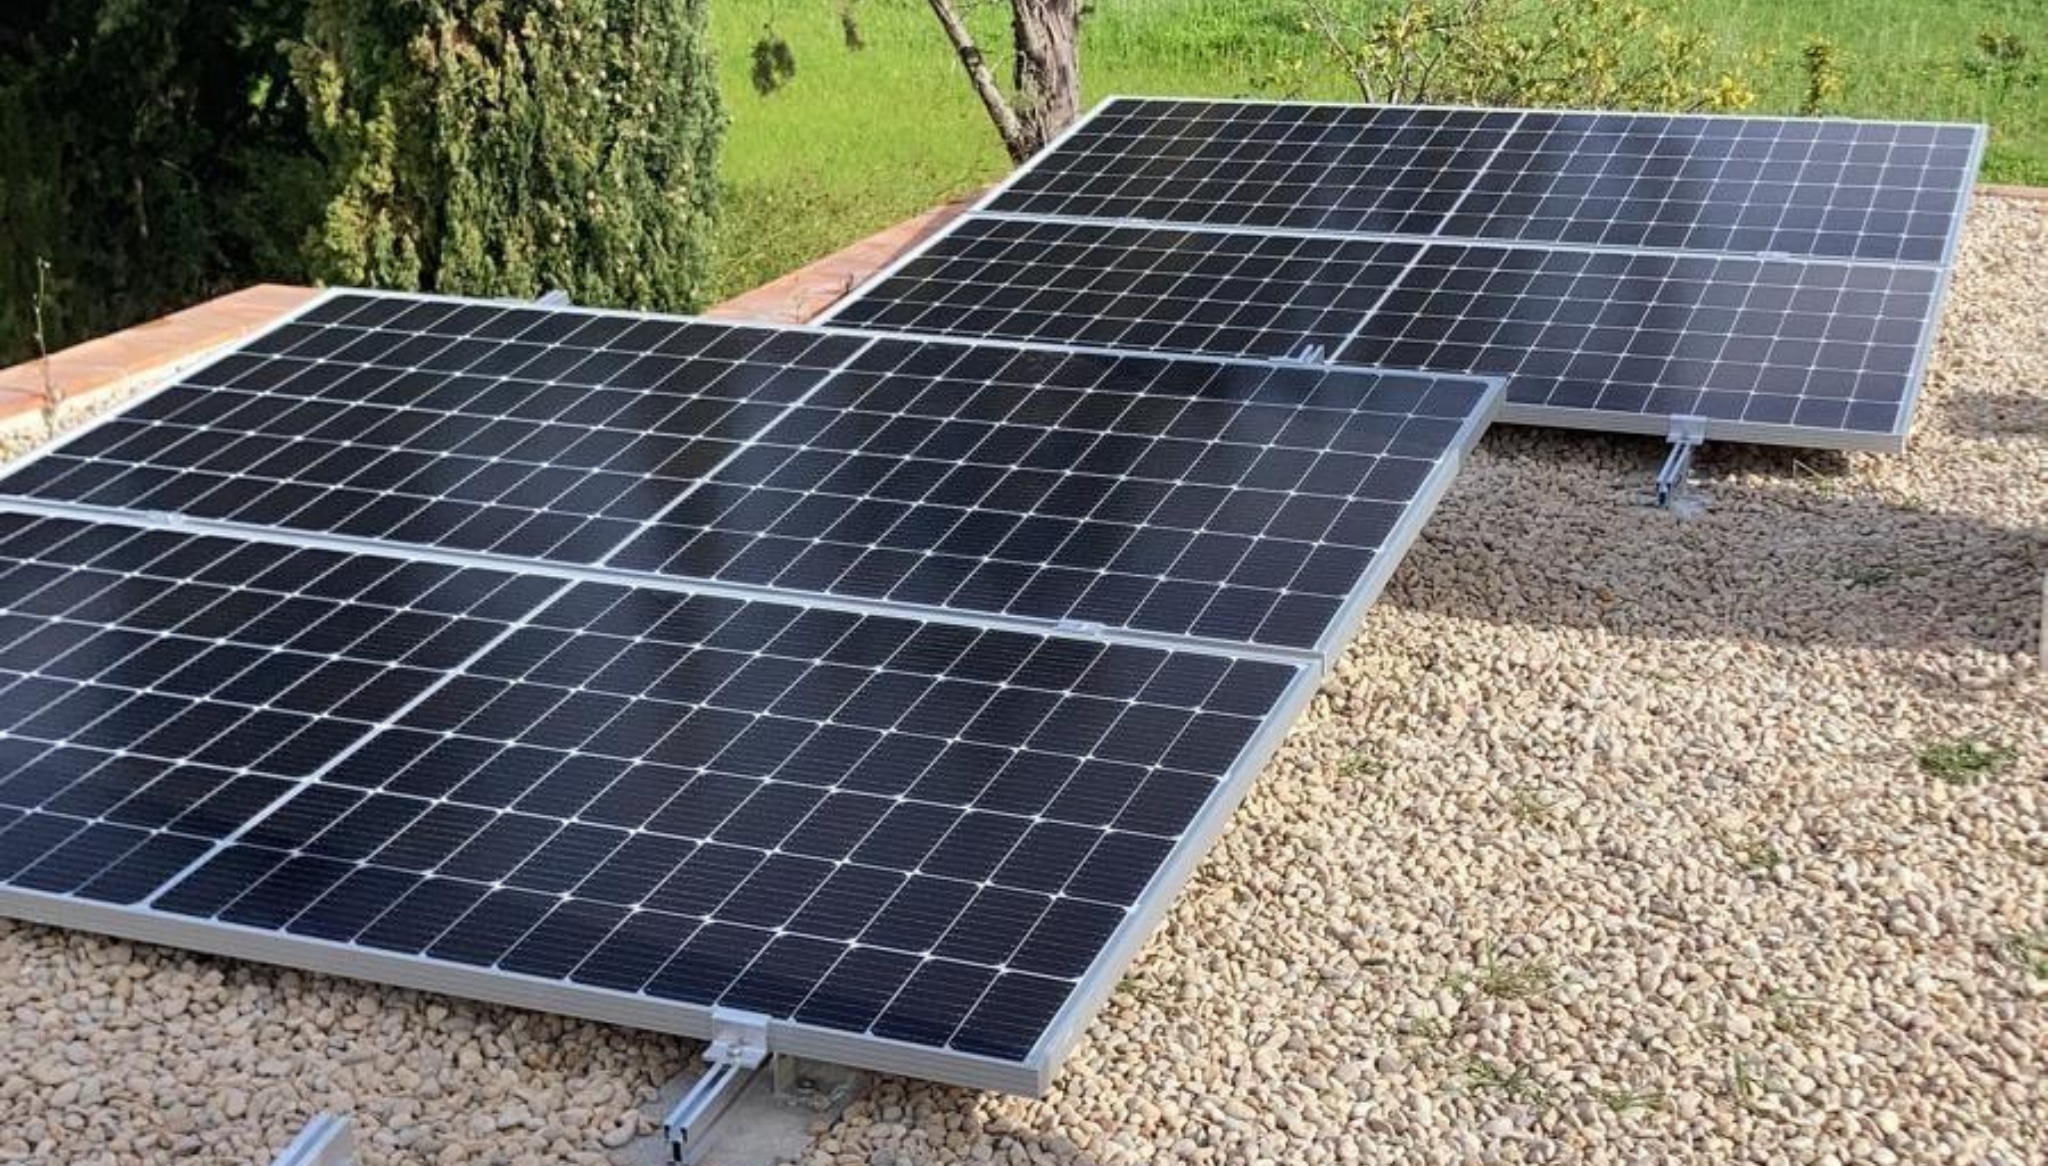 Instala las placas solares en los mejores espacios orientados al sol